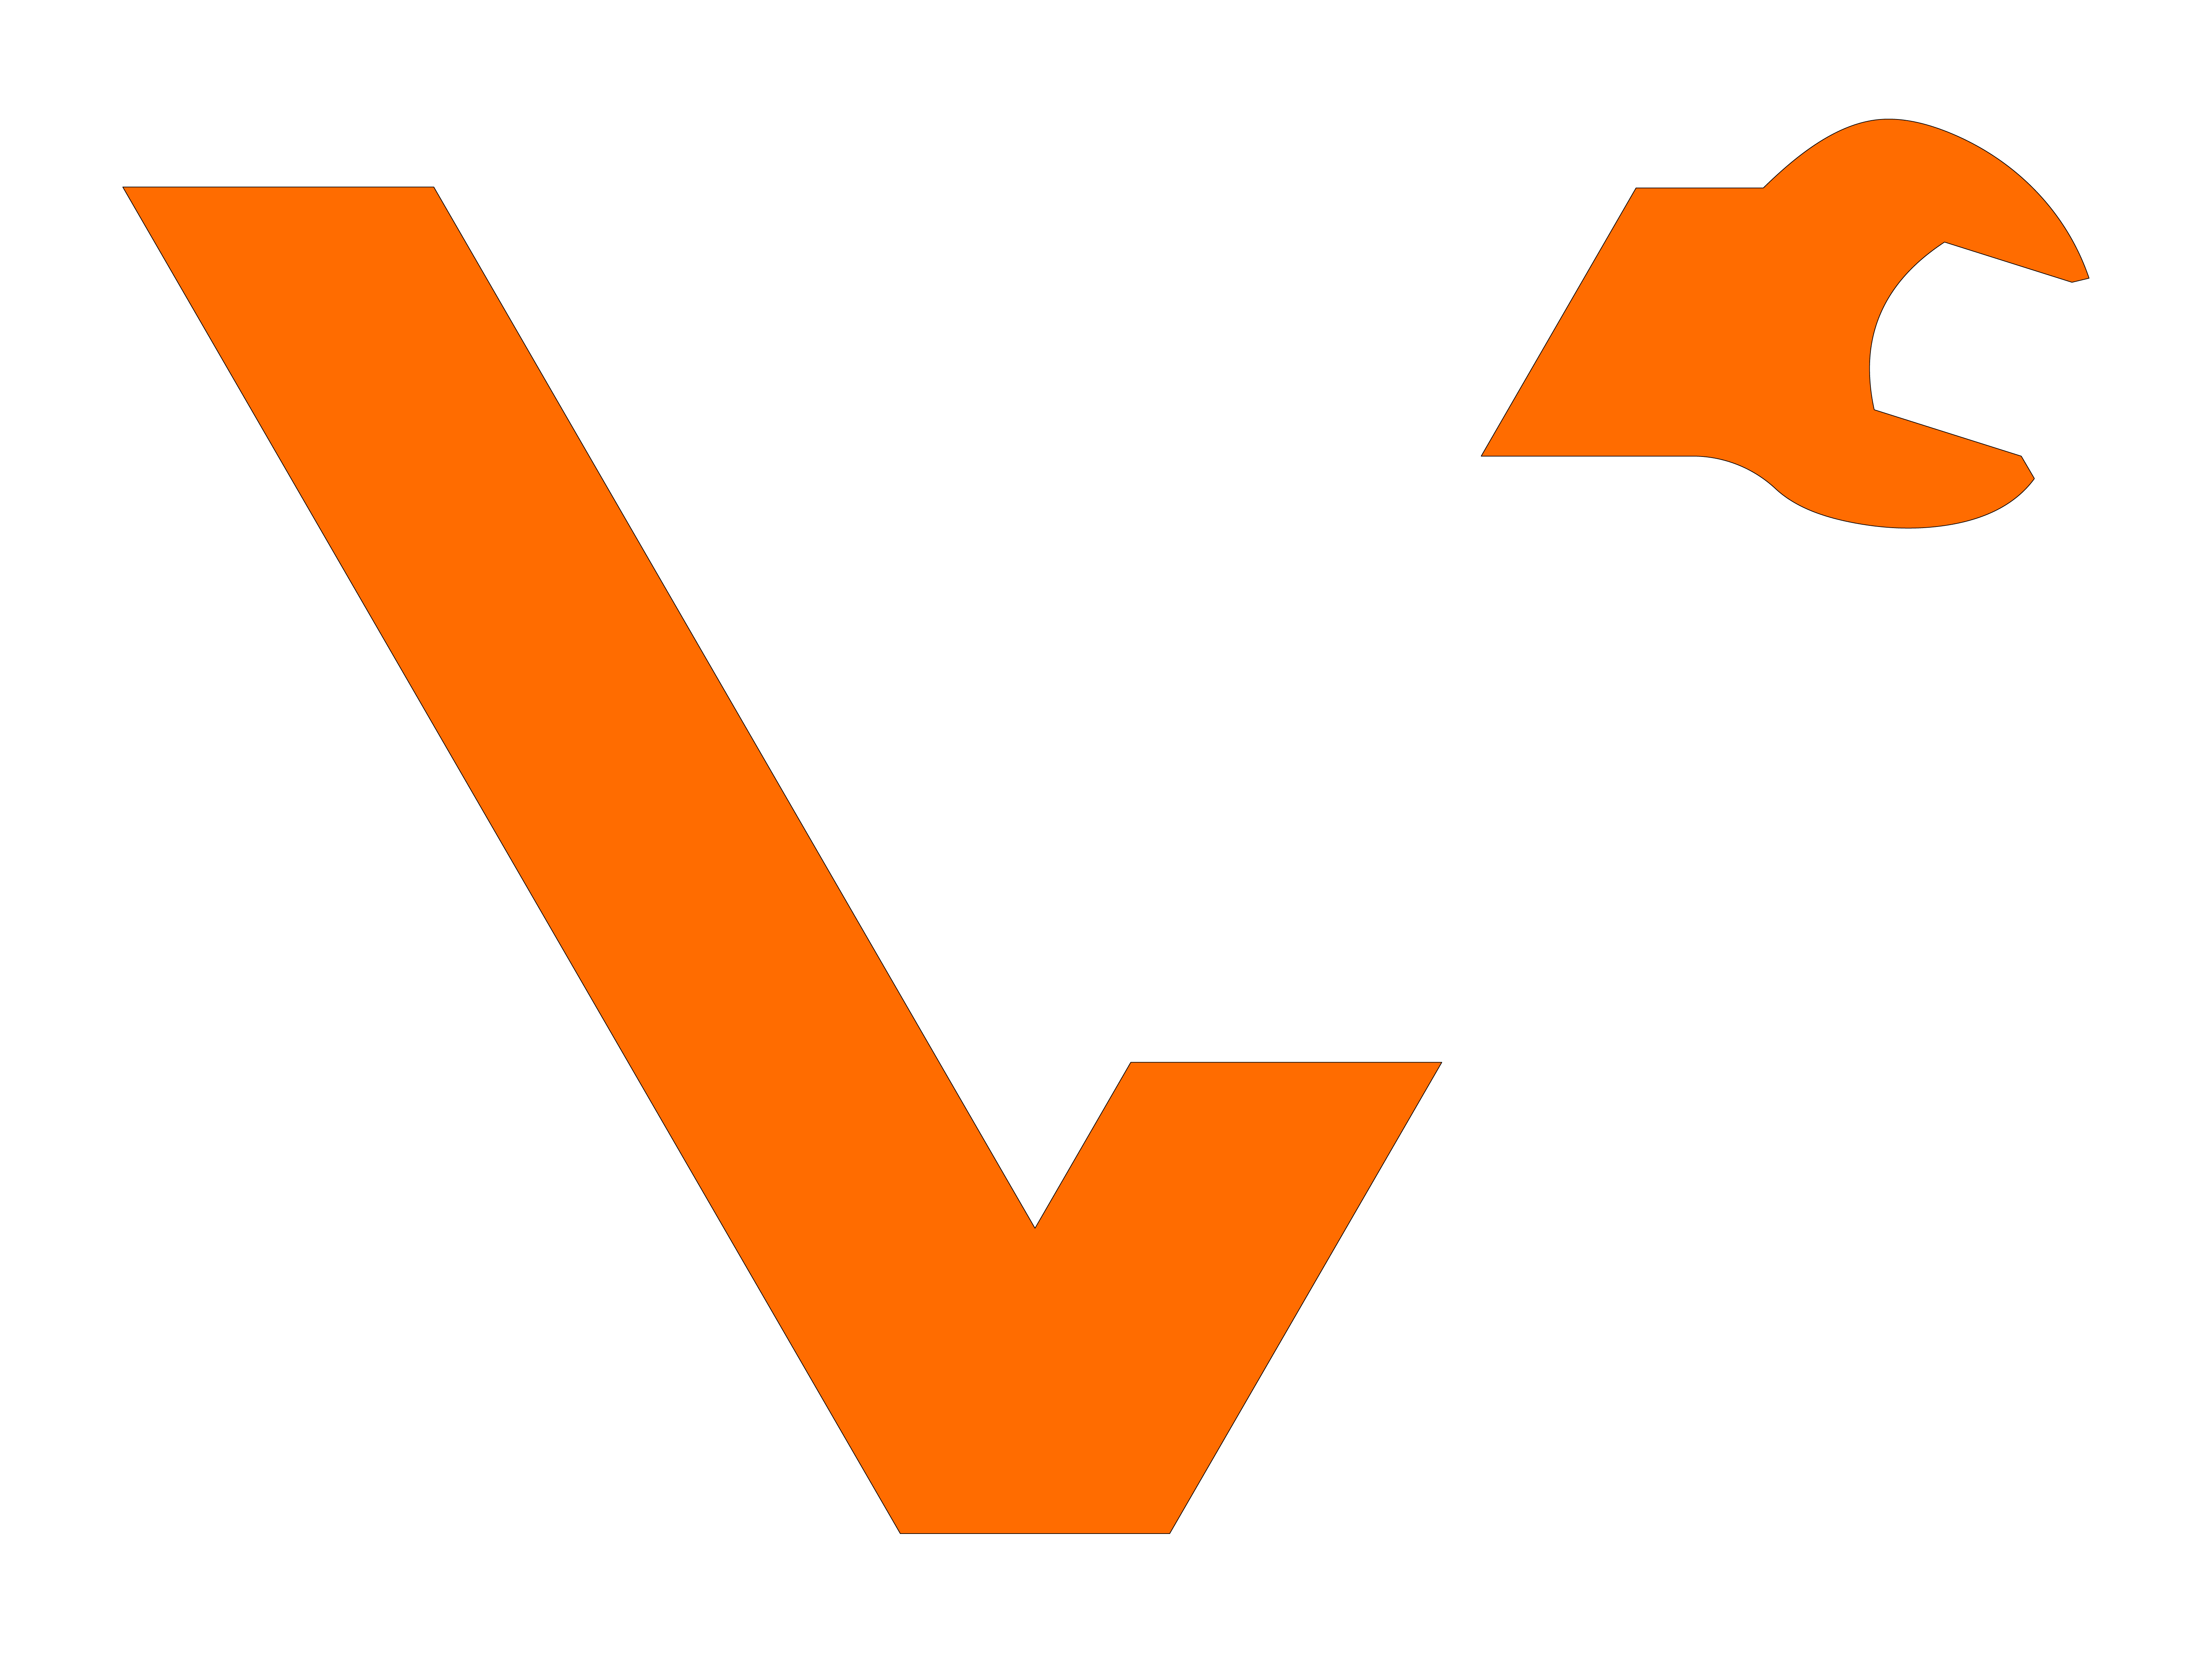 van solutions logo in orange